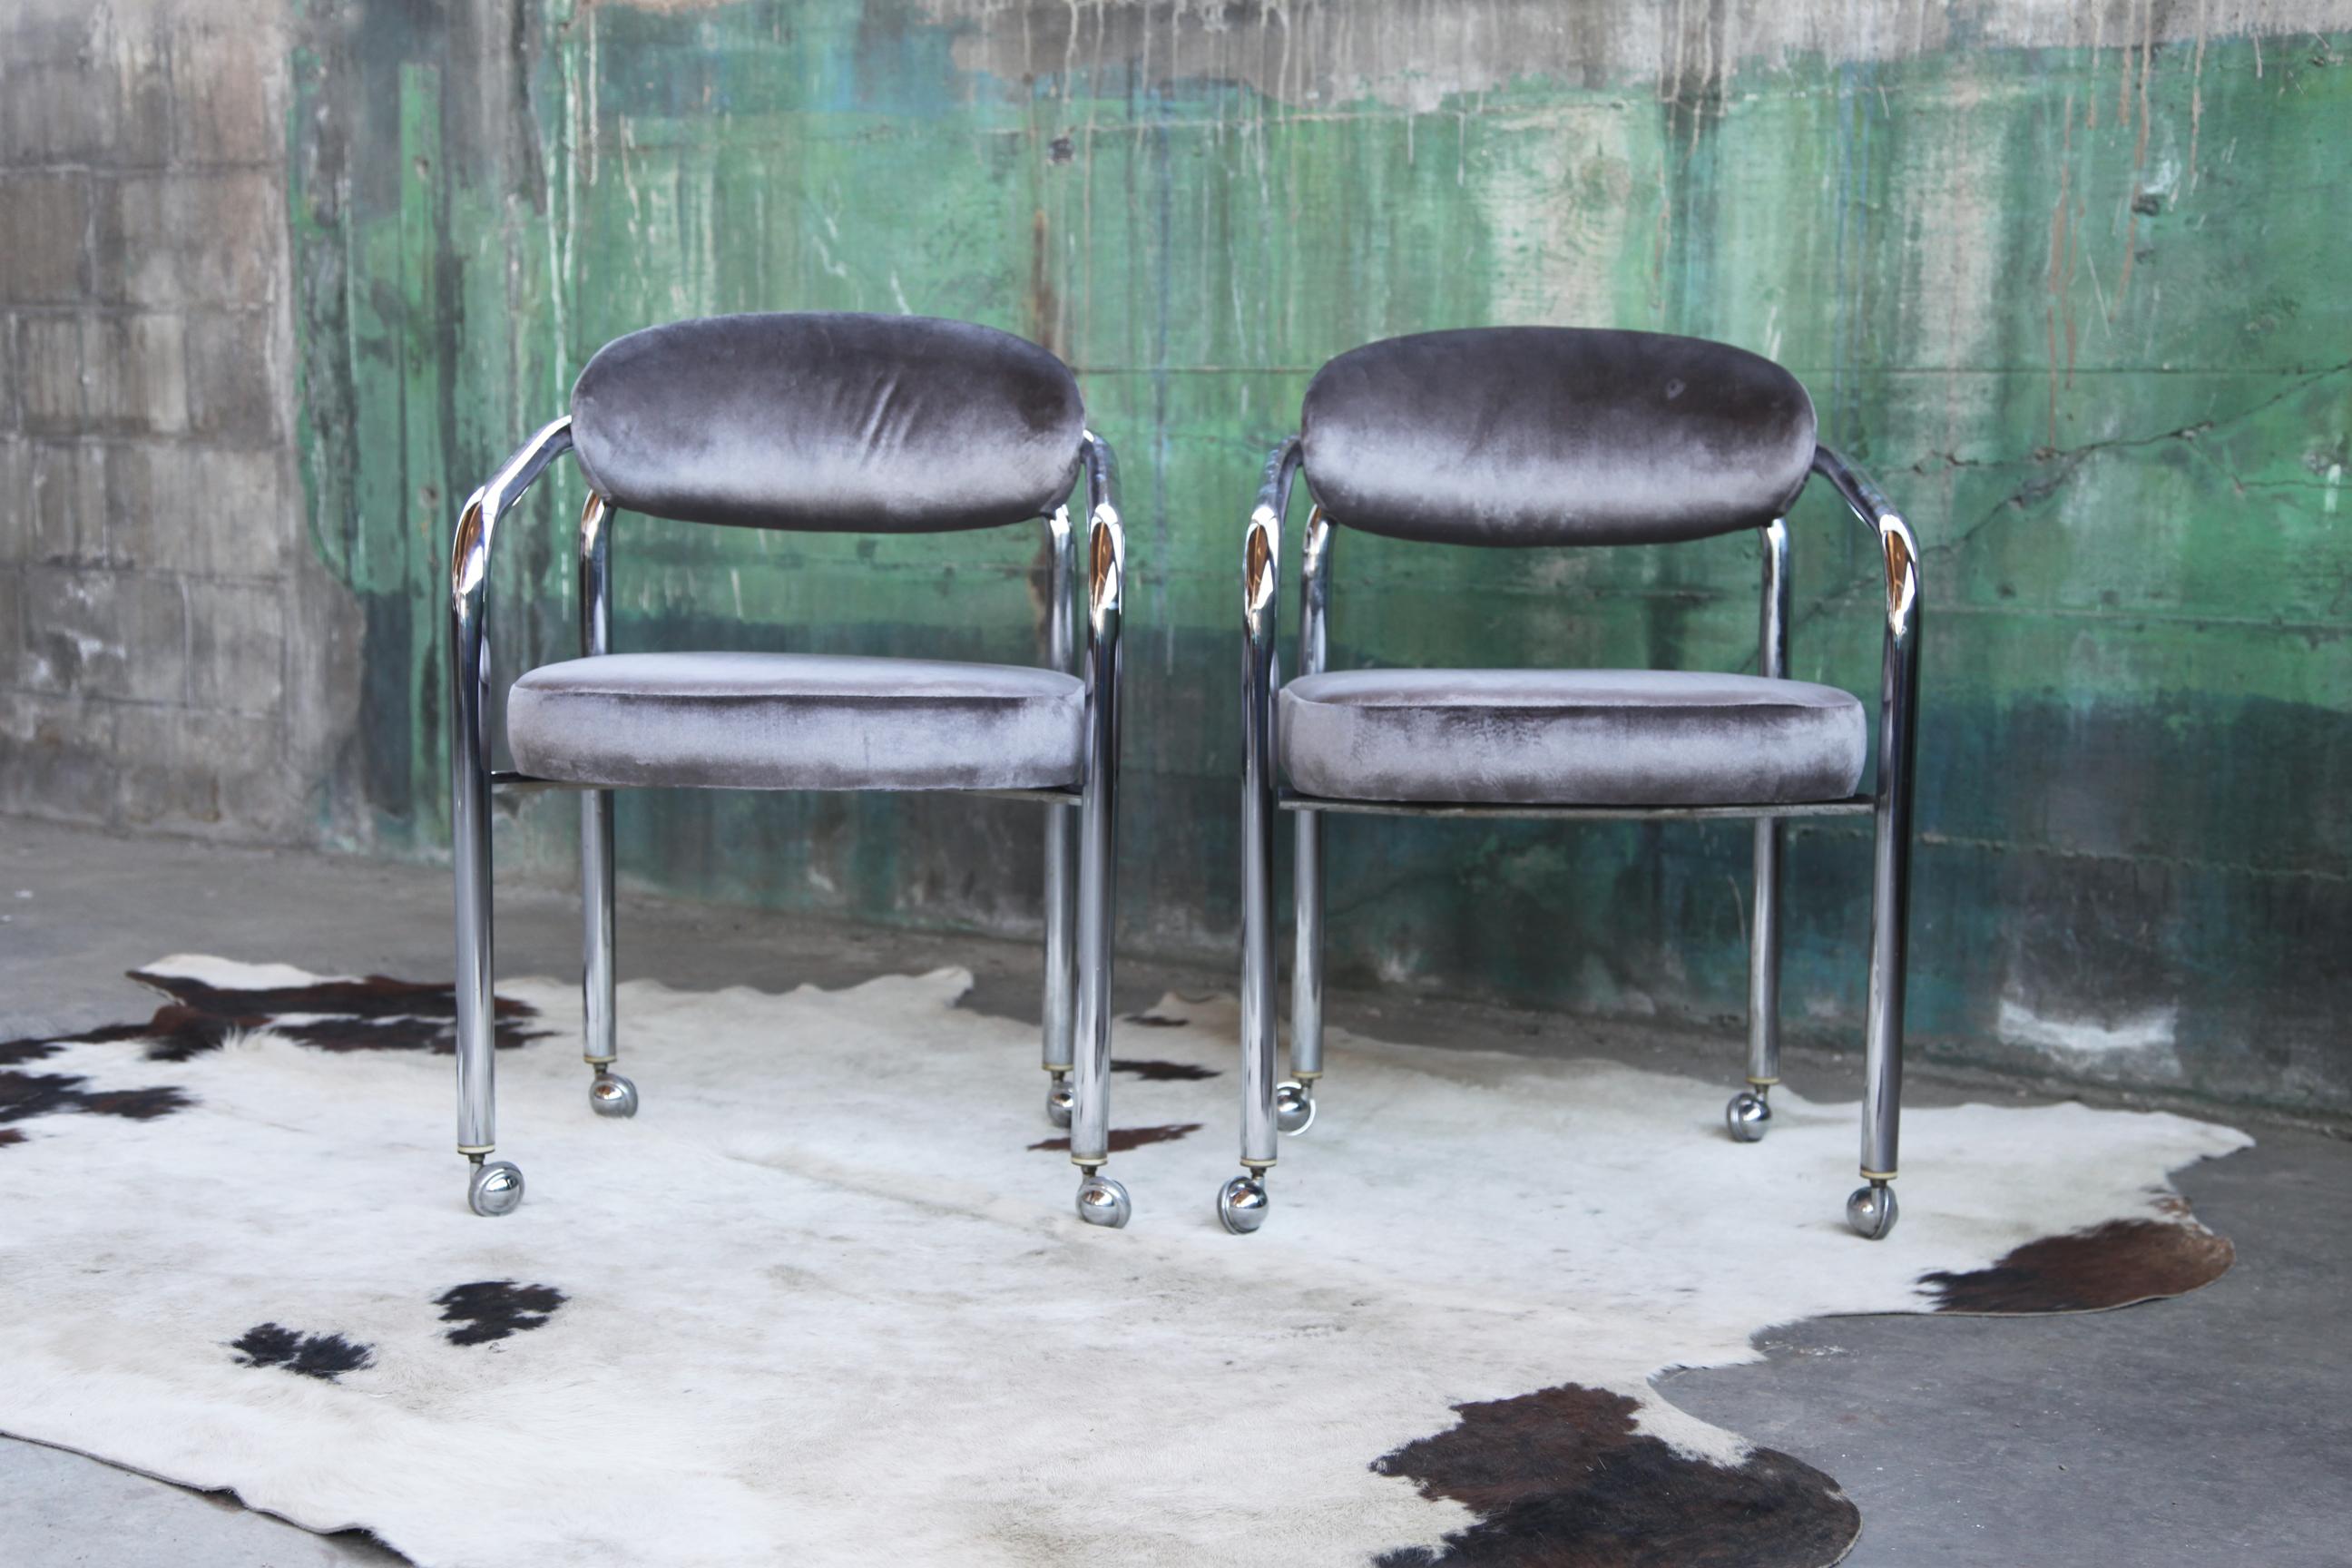 Incroyables chaises tubulaires chromées des années 70 sur de superbes roulettes chromées à billes. Cadre en très bon état. Sellerie flambant neuve, en parfait état. Dans le style de John Mascheroni.  Très beau design en chrome plié.  

Il vient